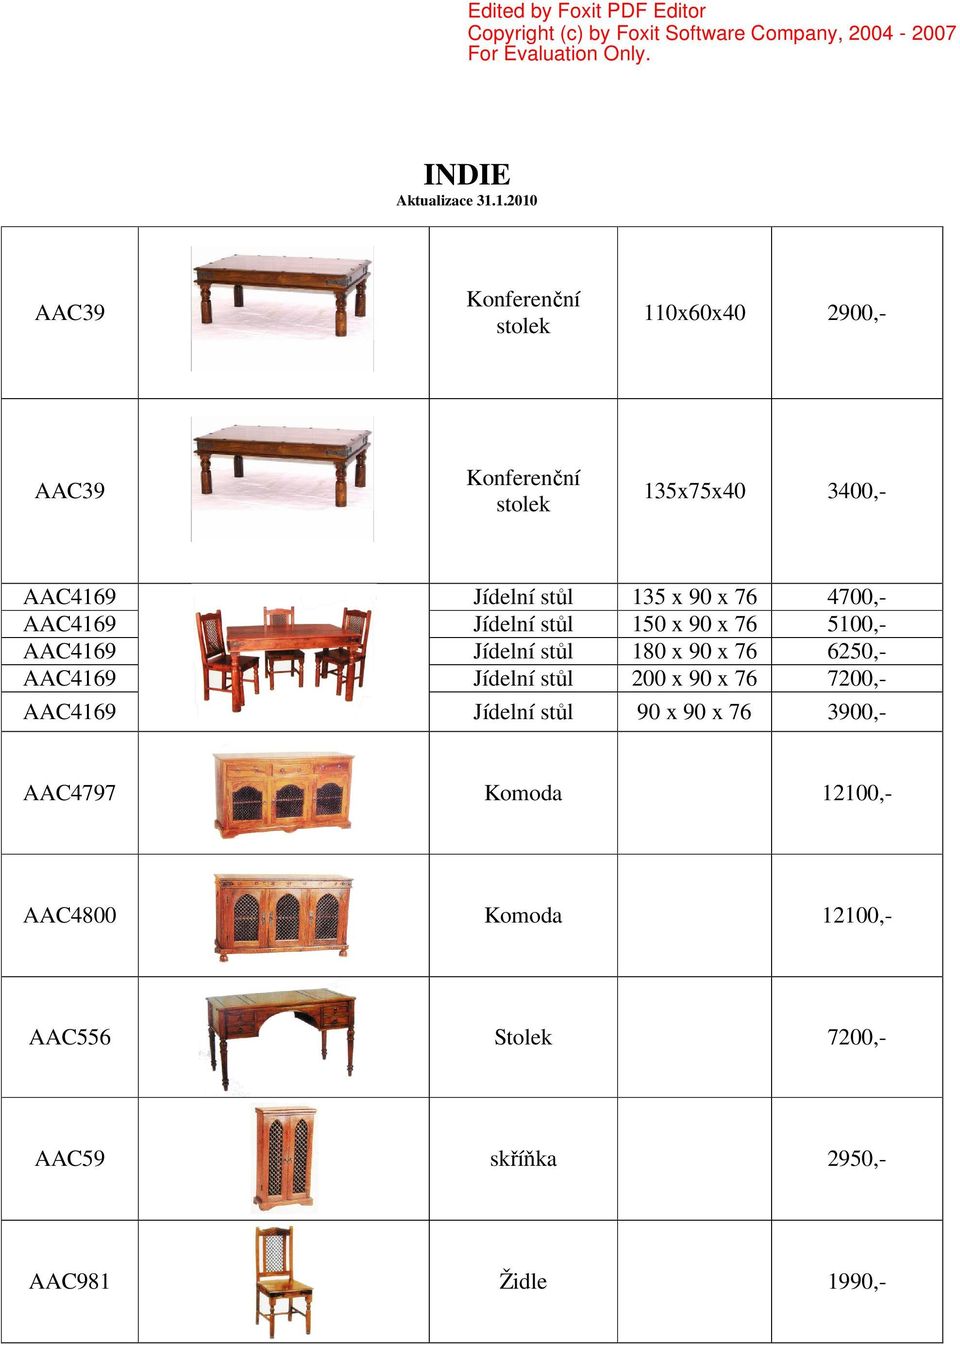 76 6250,- AAC4169 Jídelní stůl 200 x 90 x 76 7200,- AAC4169 Jídelní stůl 90 x 90 x 76 3900,-